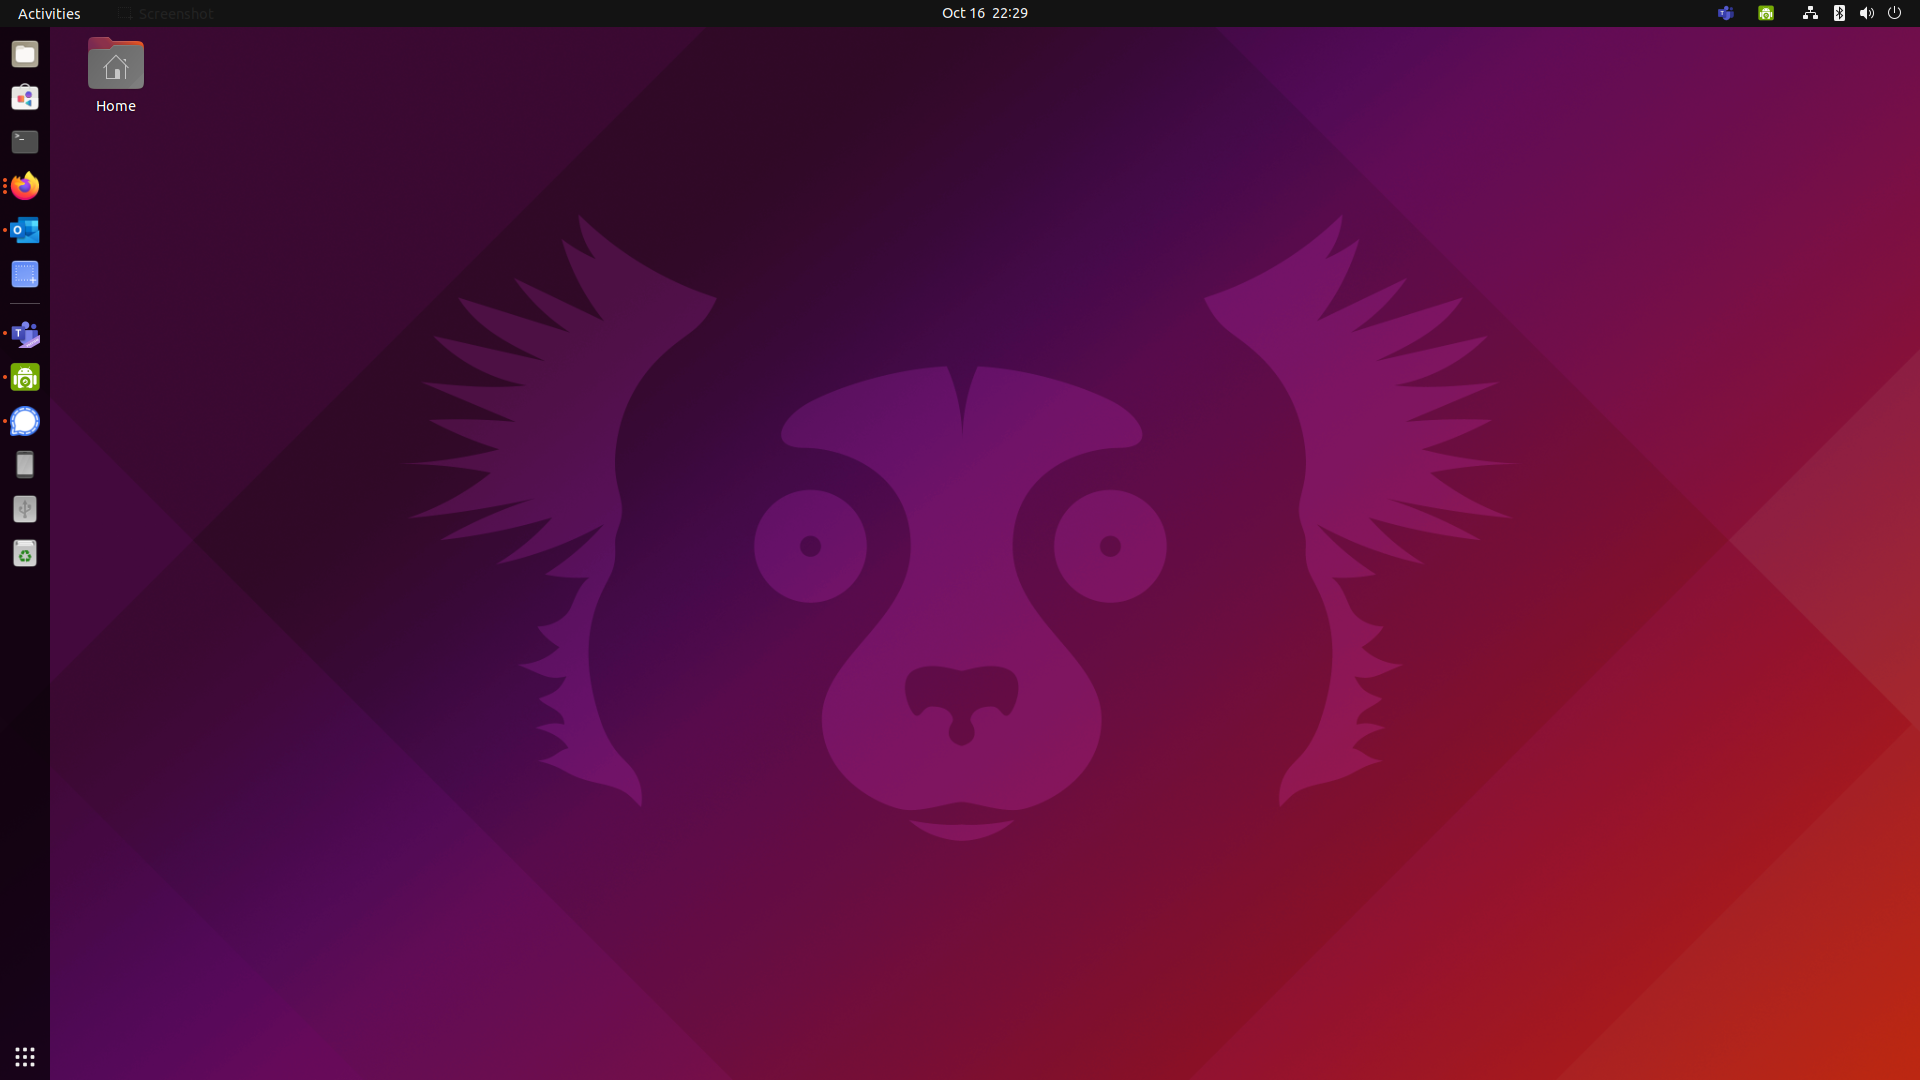 Ubuntu 21.10 Desktop